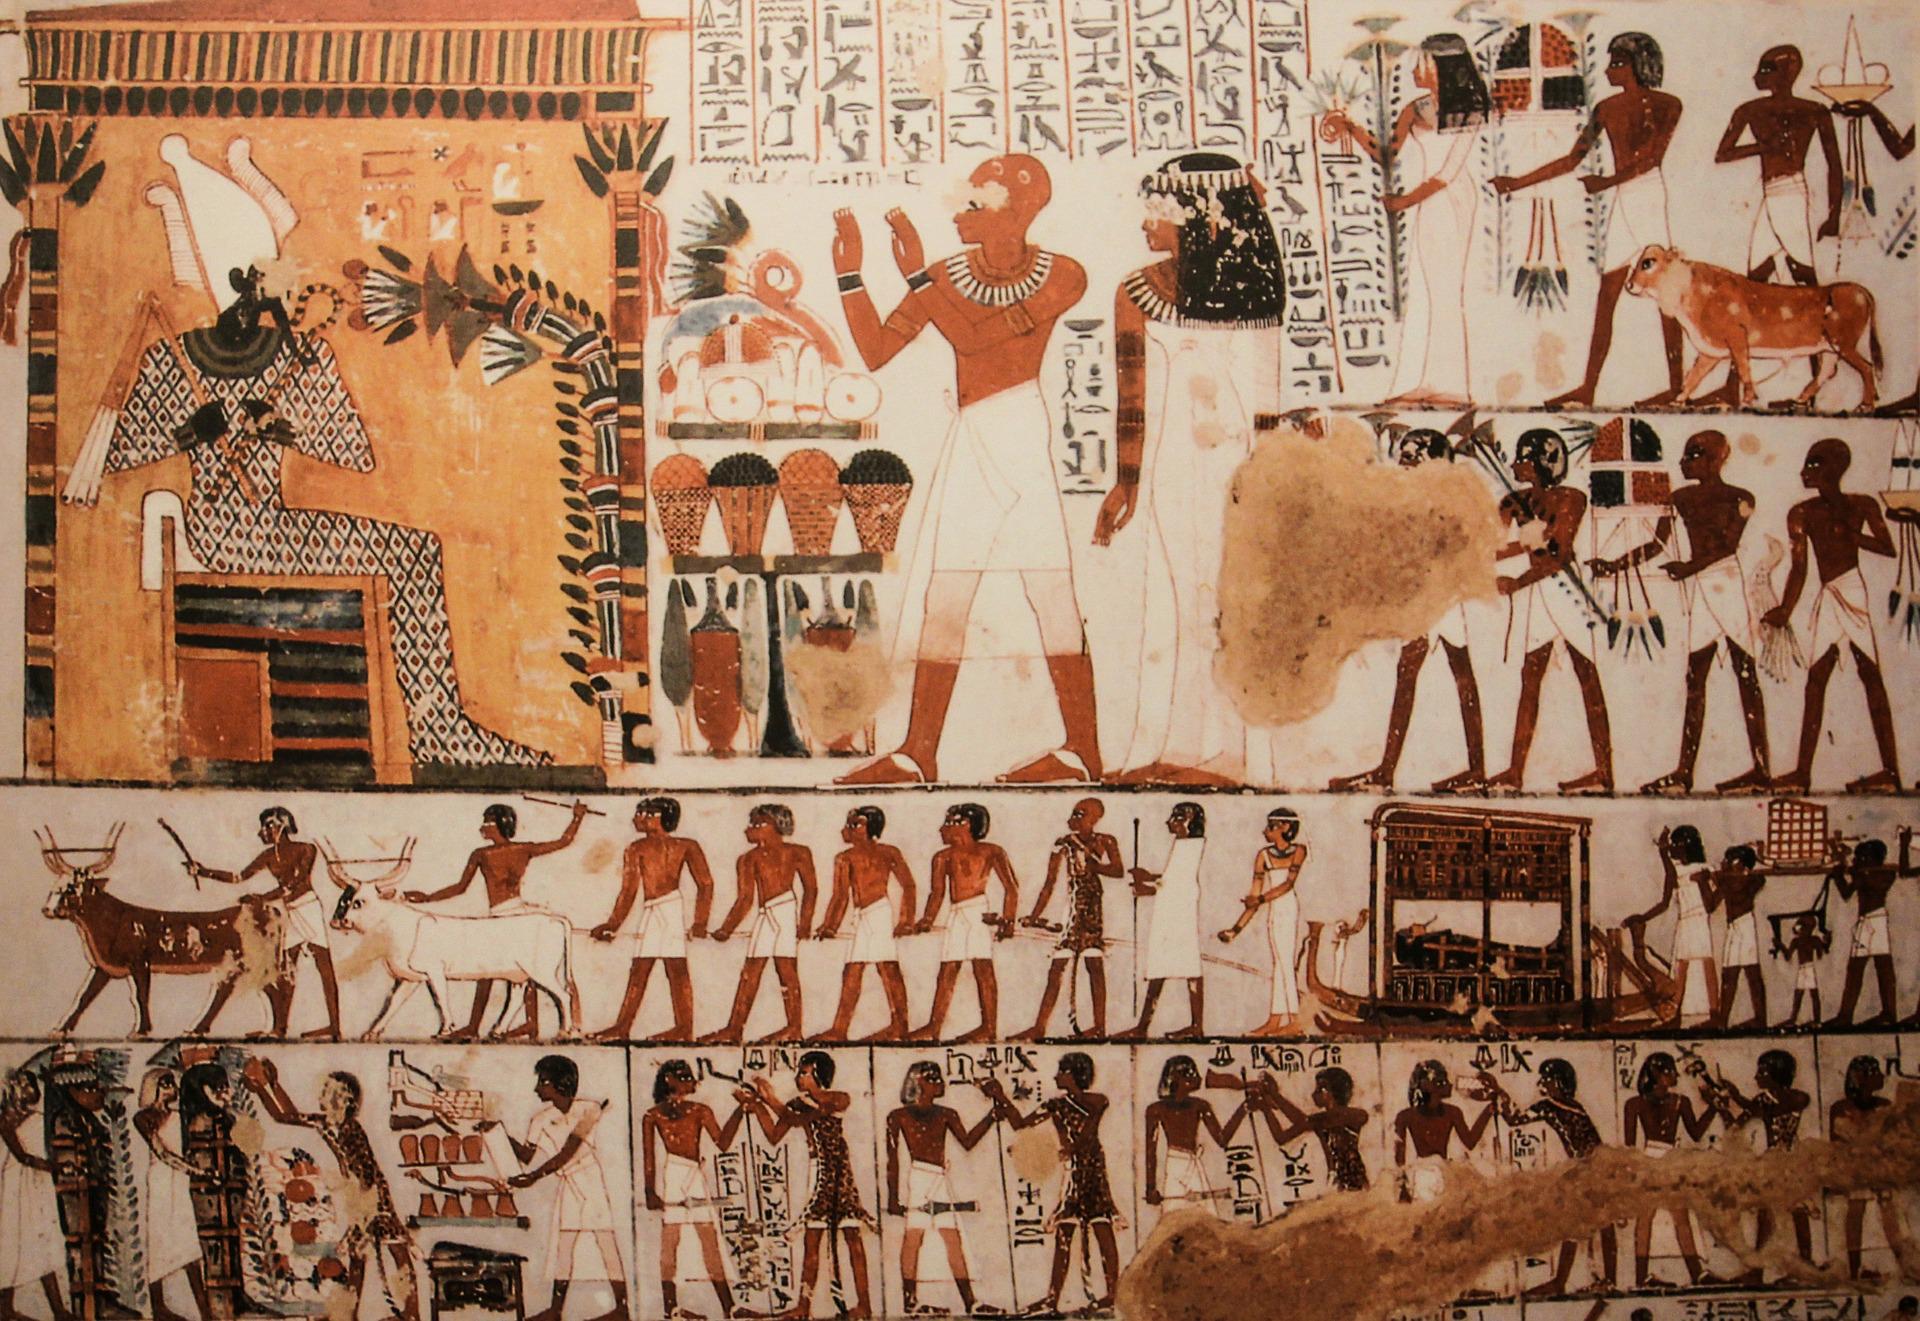 Hieroglyfy najdene v pyramide